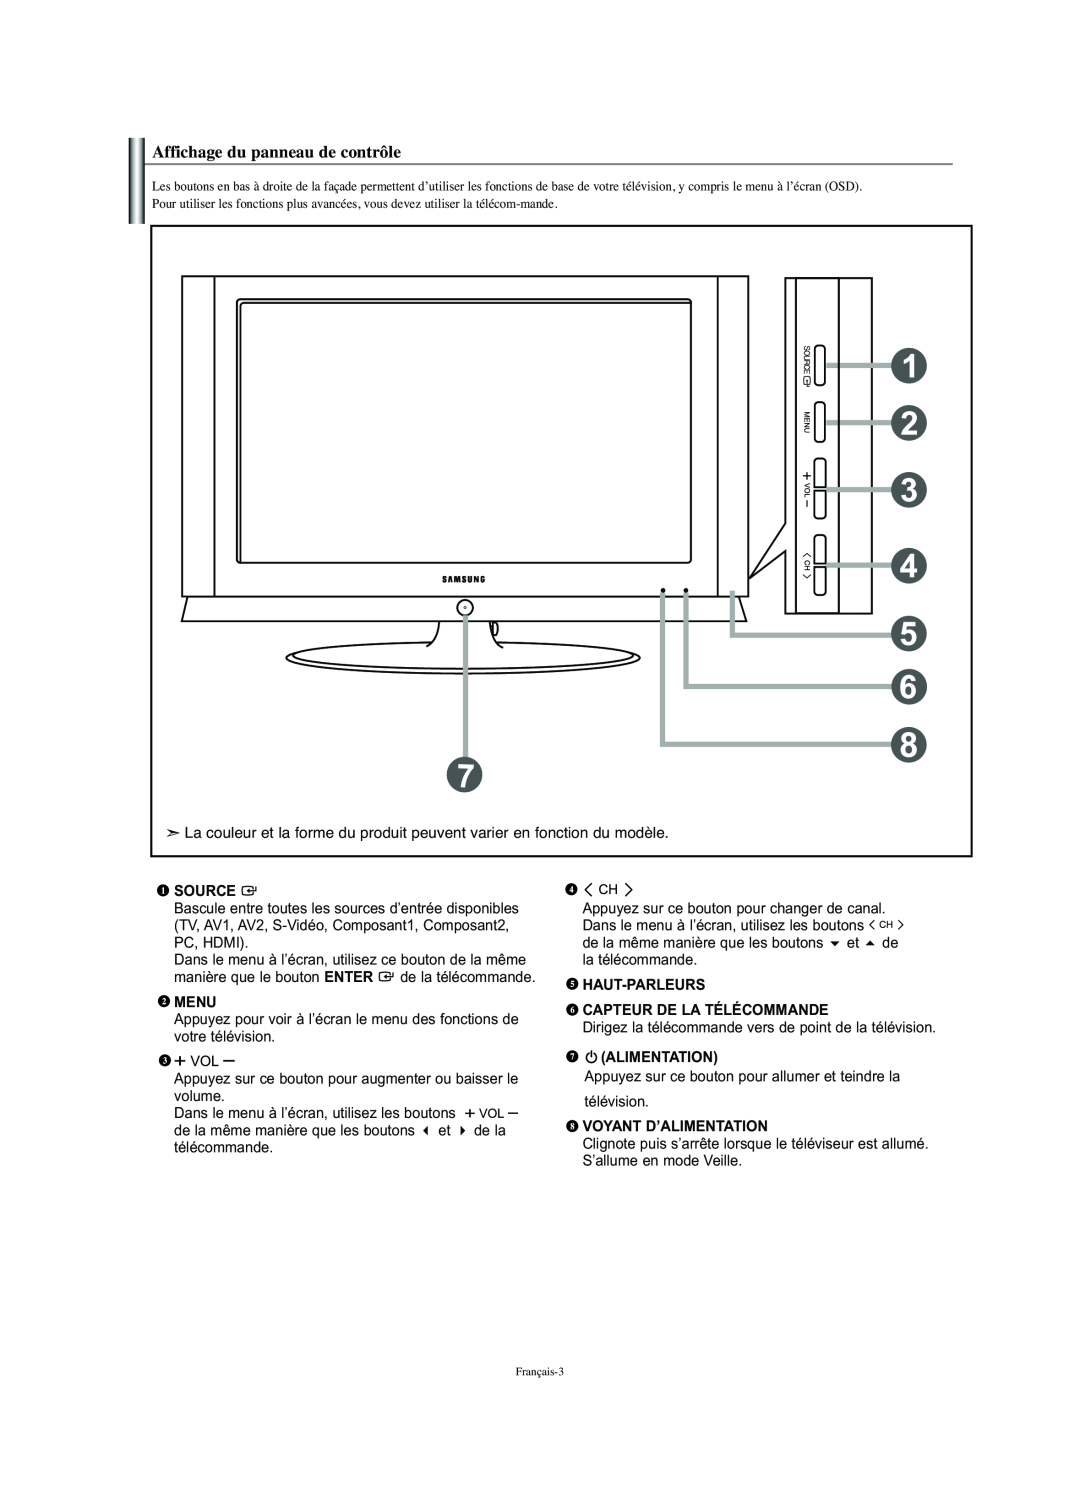 Samsung LN-S2341W Affichage du panneau de contrôle, Source, Menu, Haut-Parleurs Capteur De La Télécommande, Alimentation 